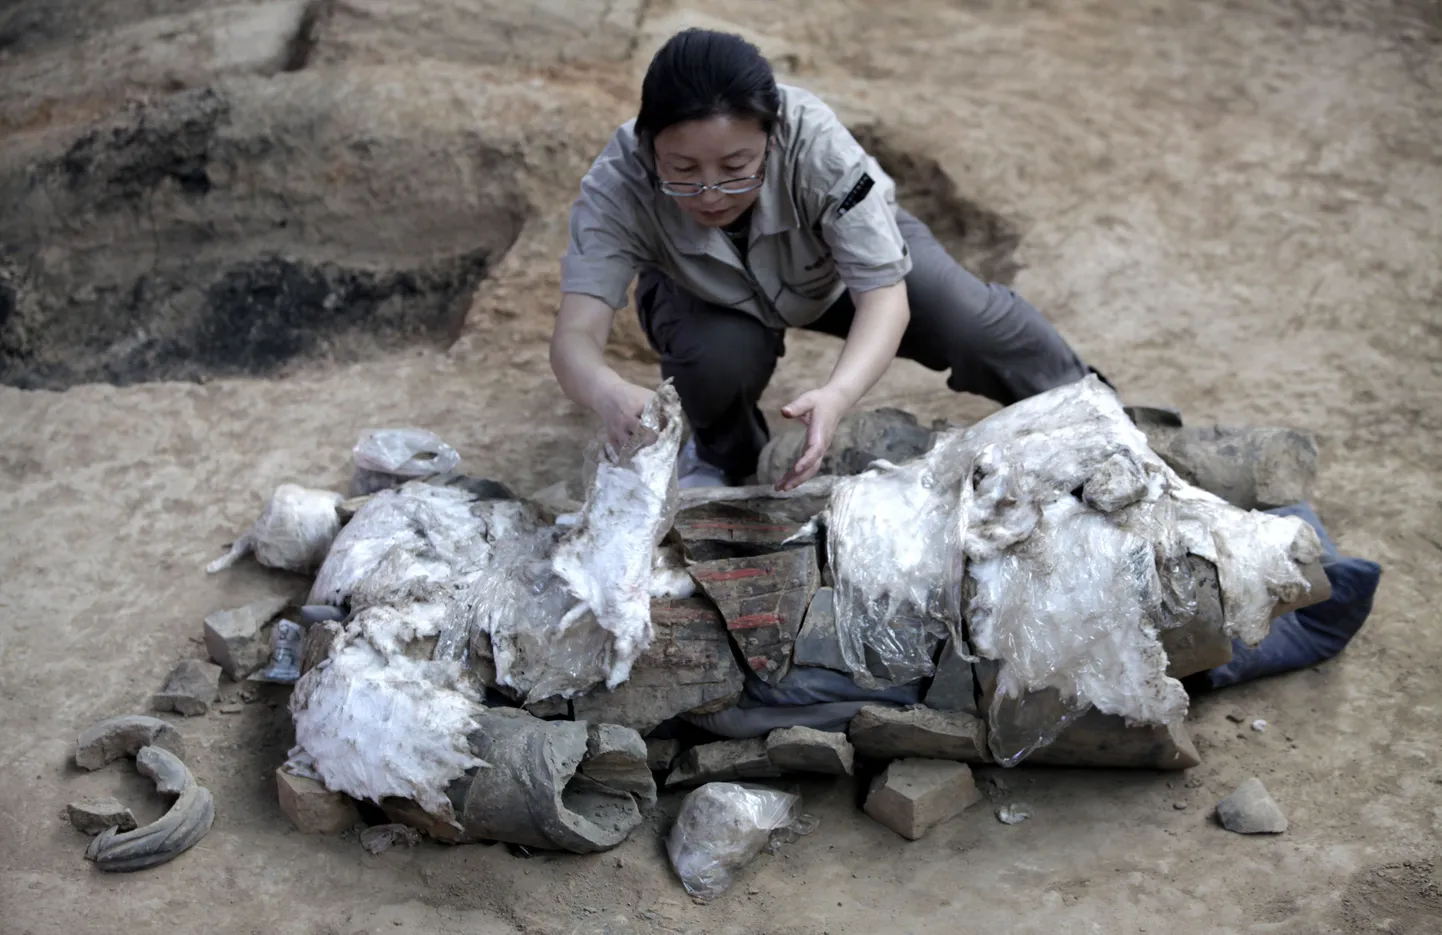 Hiina hauarüüstajad leidsid muumia